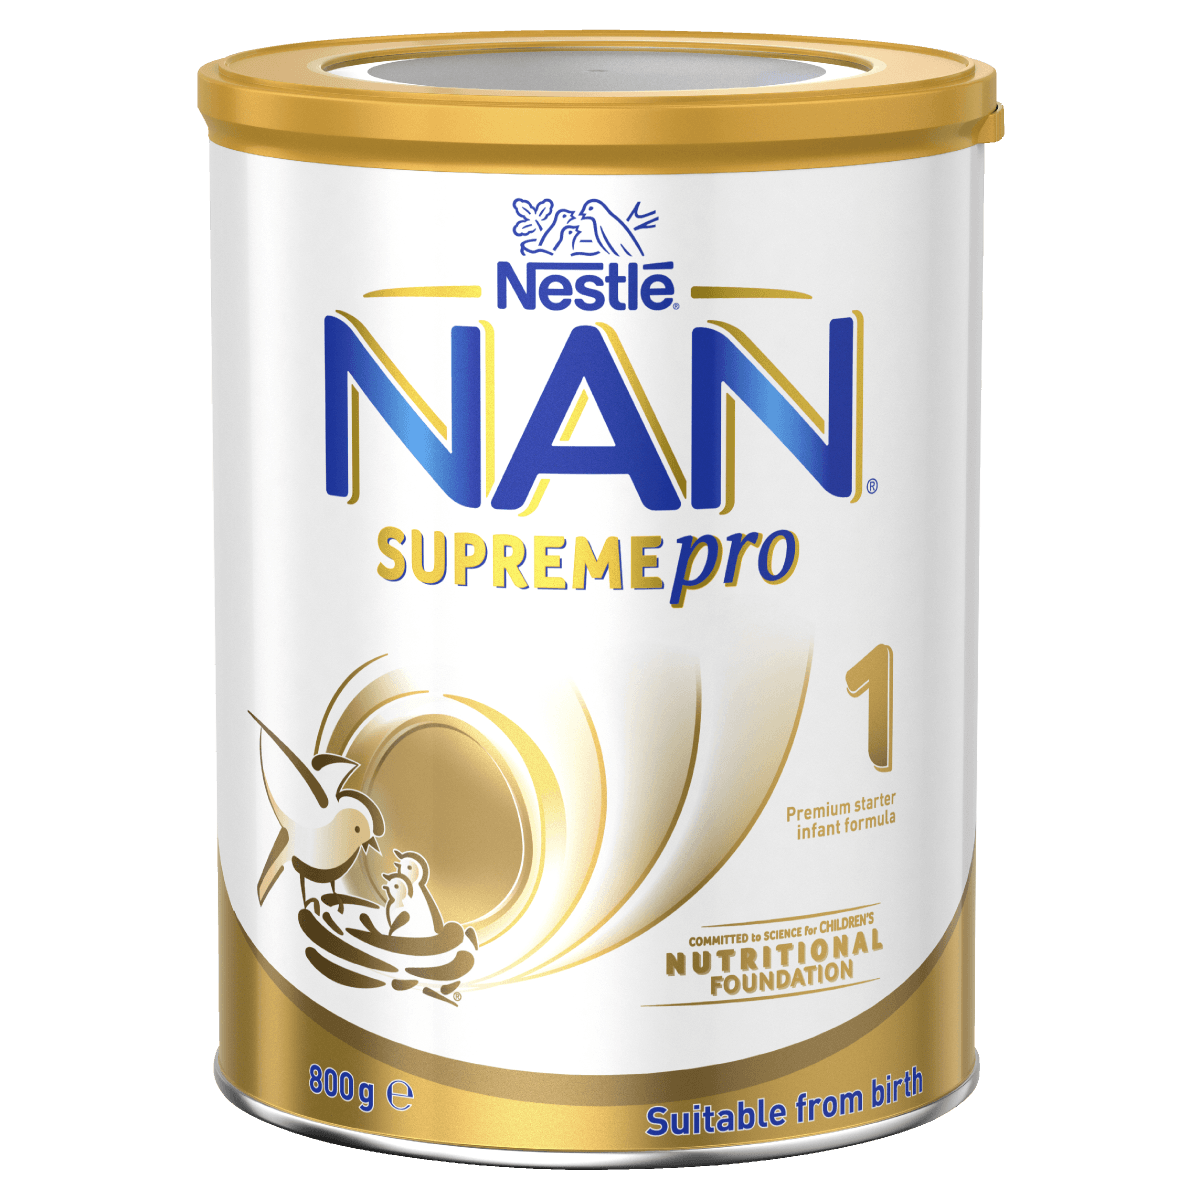 Nan supreme pro 1 - Nestle Nan